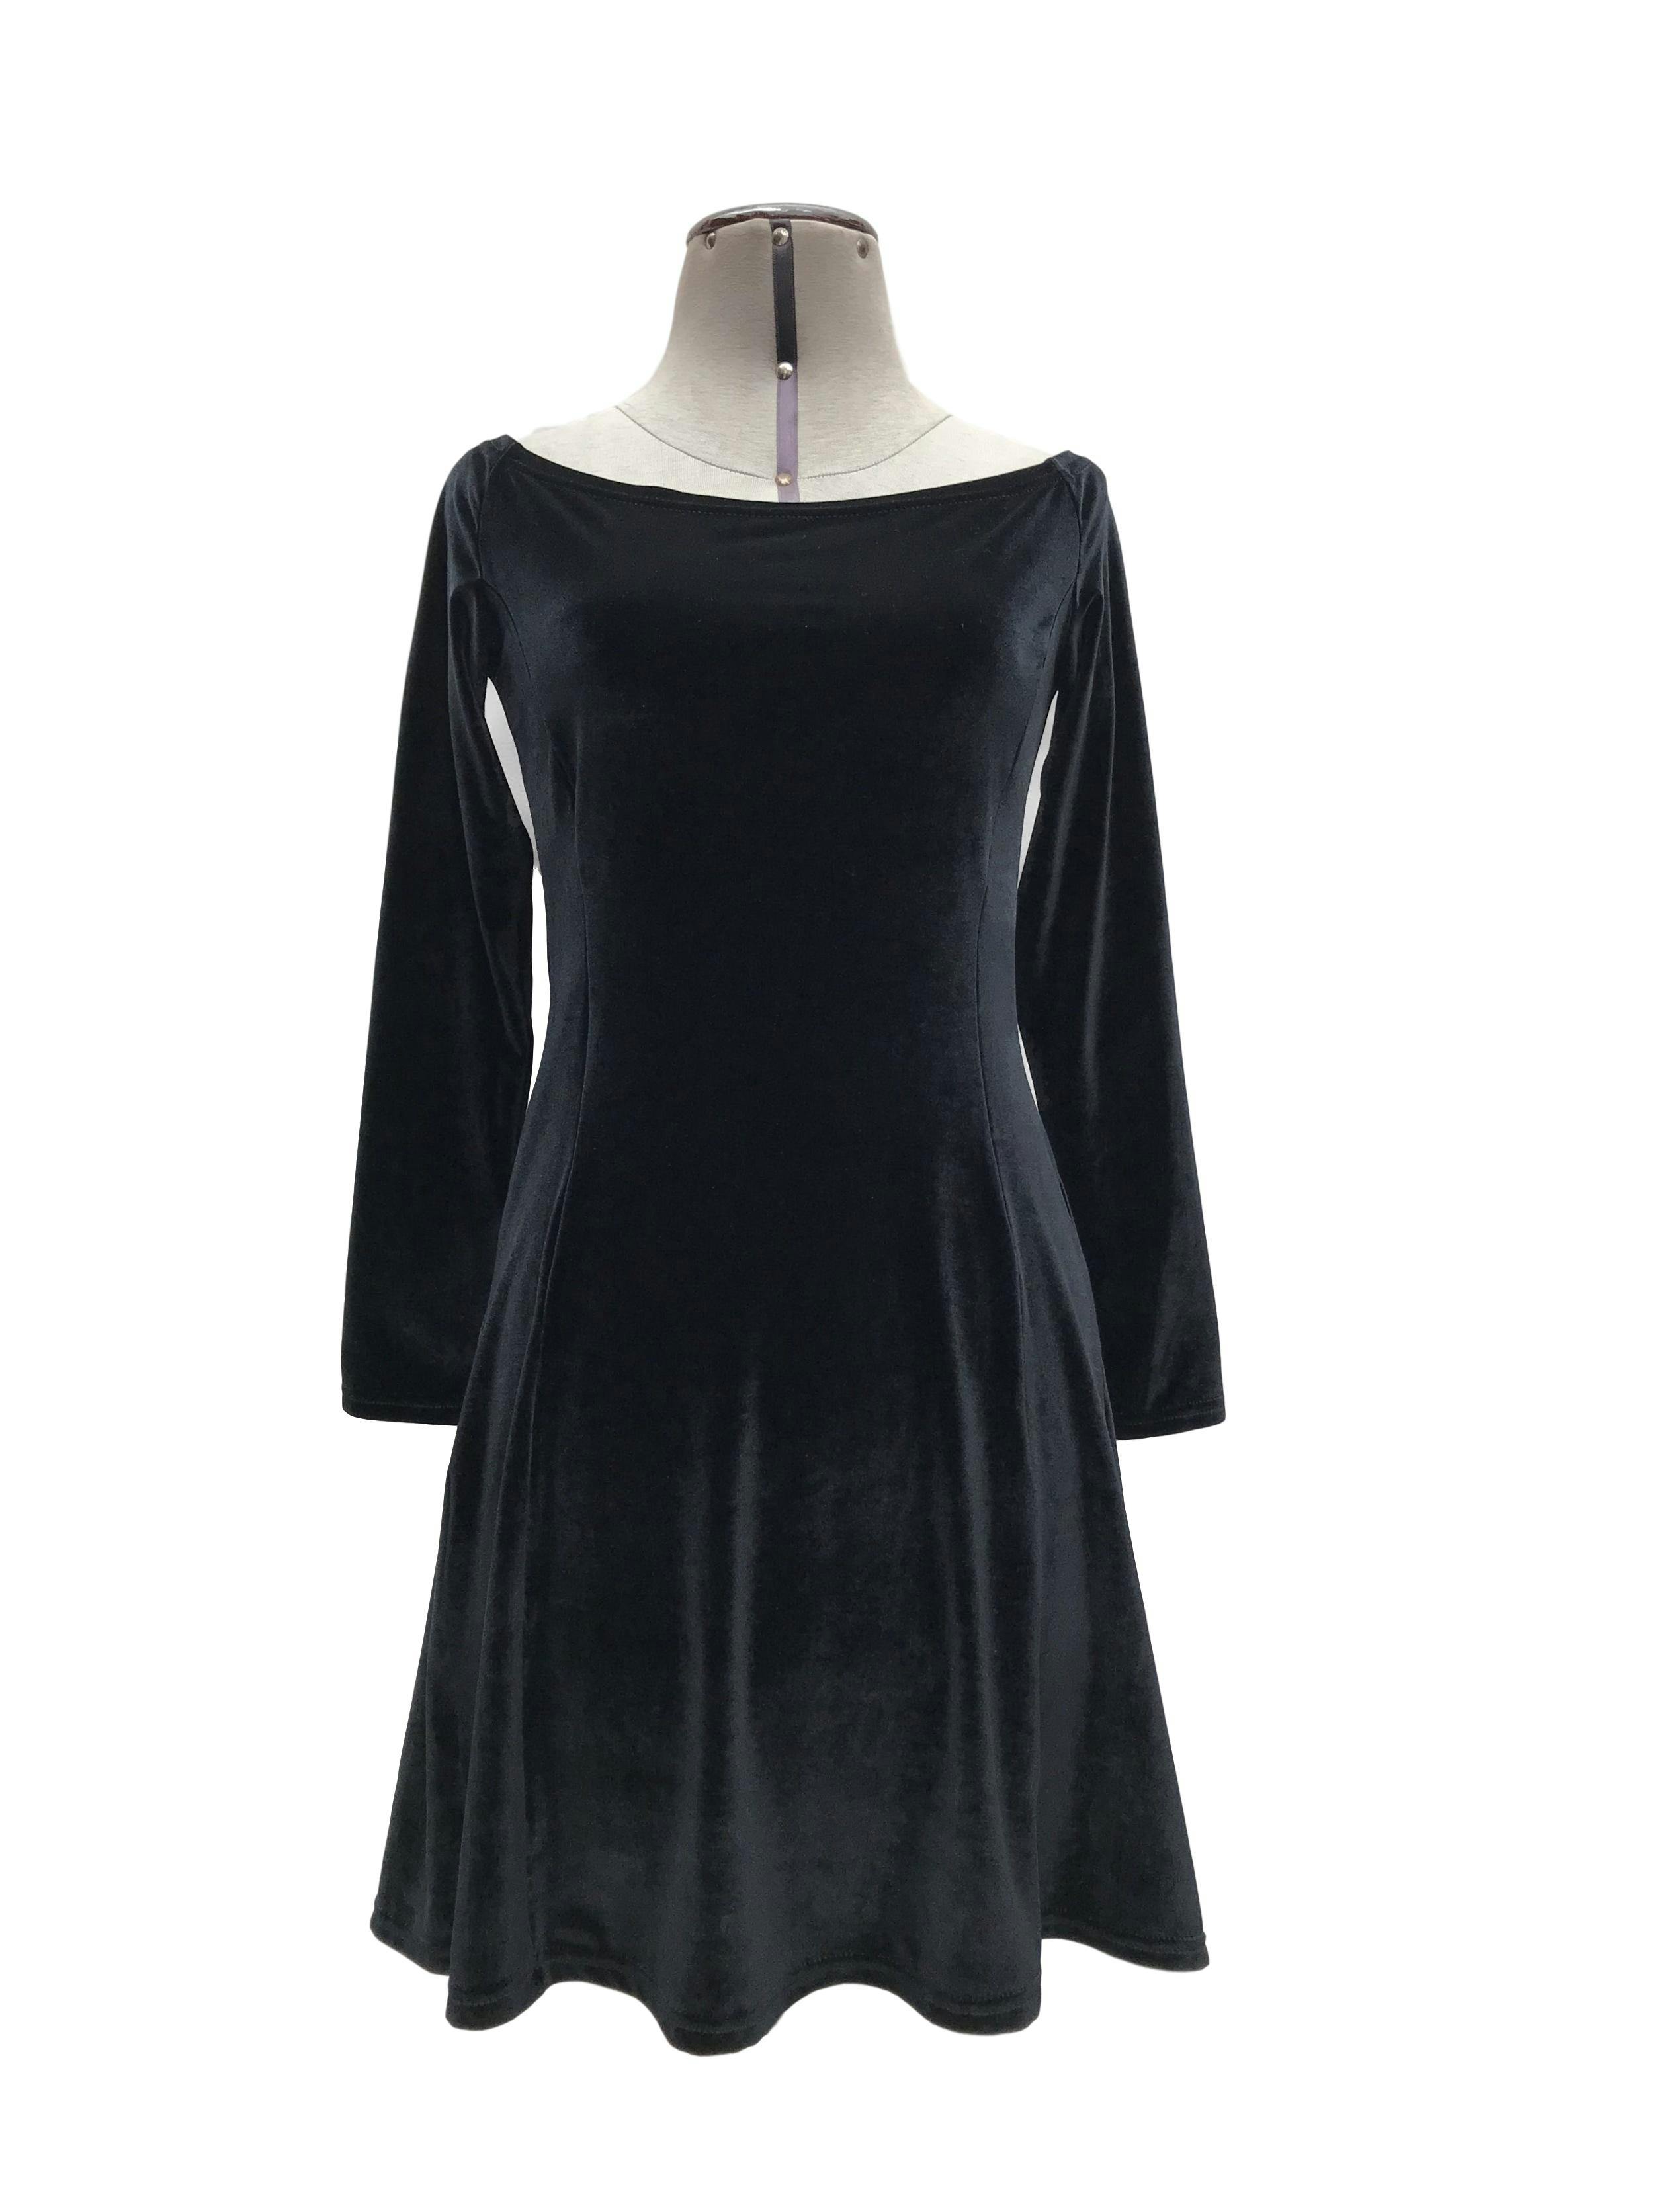 Vestido negro de plush, cuello ojal, manga larga, pinzas y falda en A. Largo 83cm